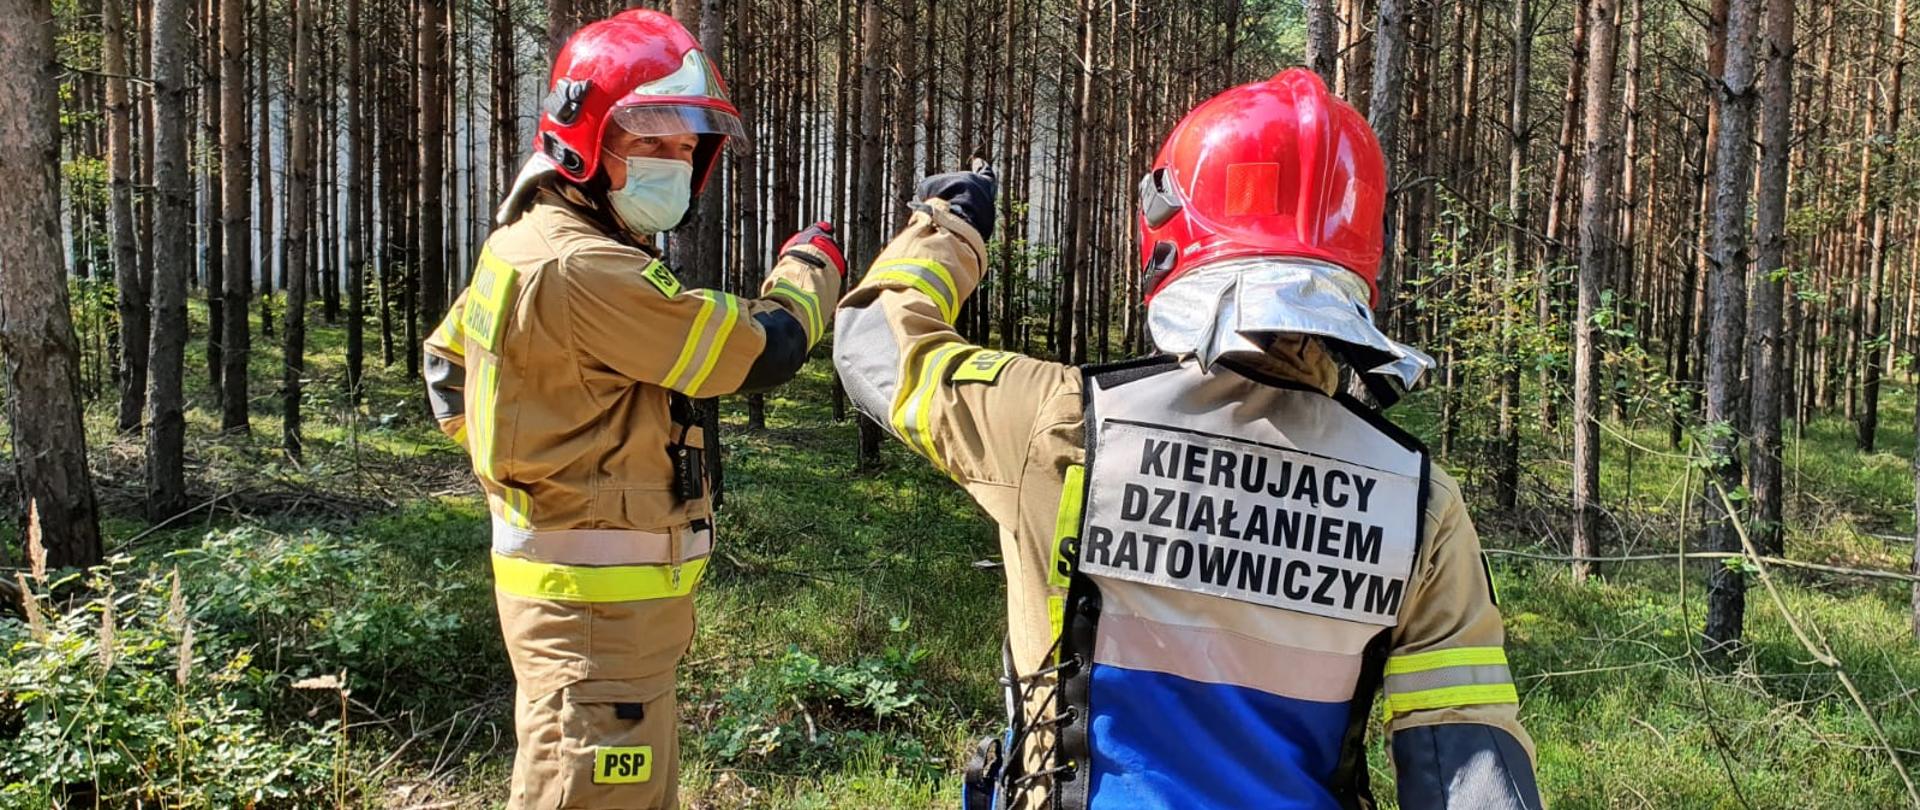 Zdjęcie przedstawia dwóch strażaków w ubraniach specjalnych z czerwonymi hełmami na głowach. Jeden z nich ma założona kamizelkę "Kierujący Działaniem Ratowniczym". Strażacy wskazują na zadymienie w środku lasu.